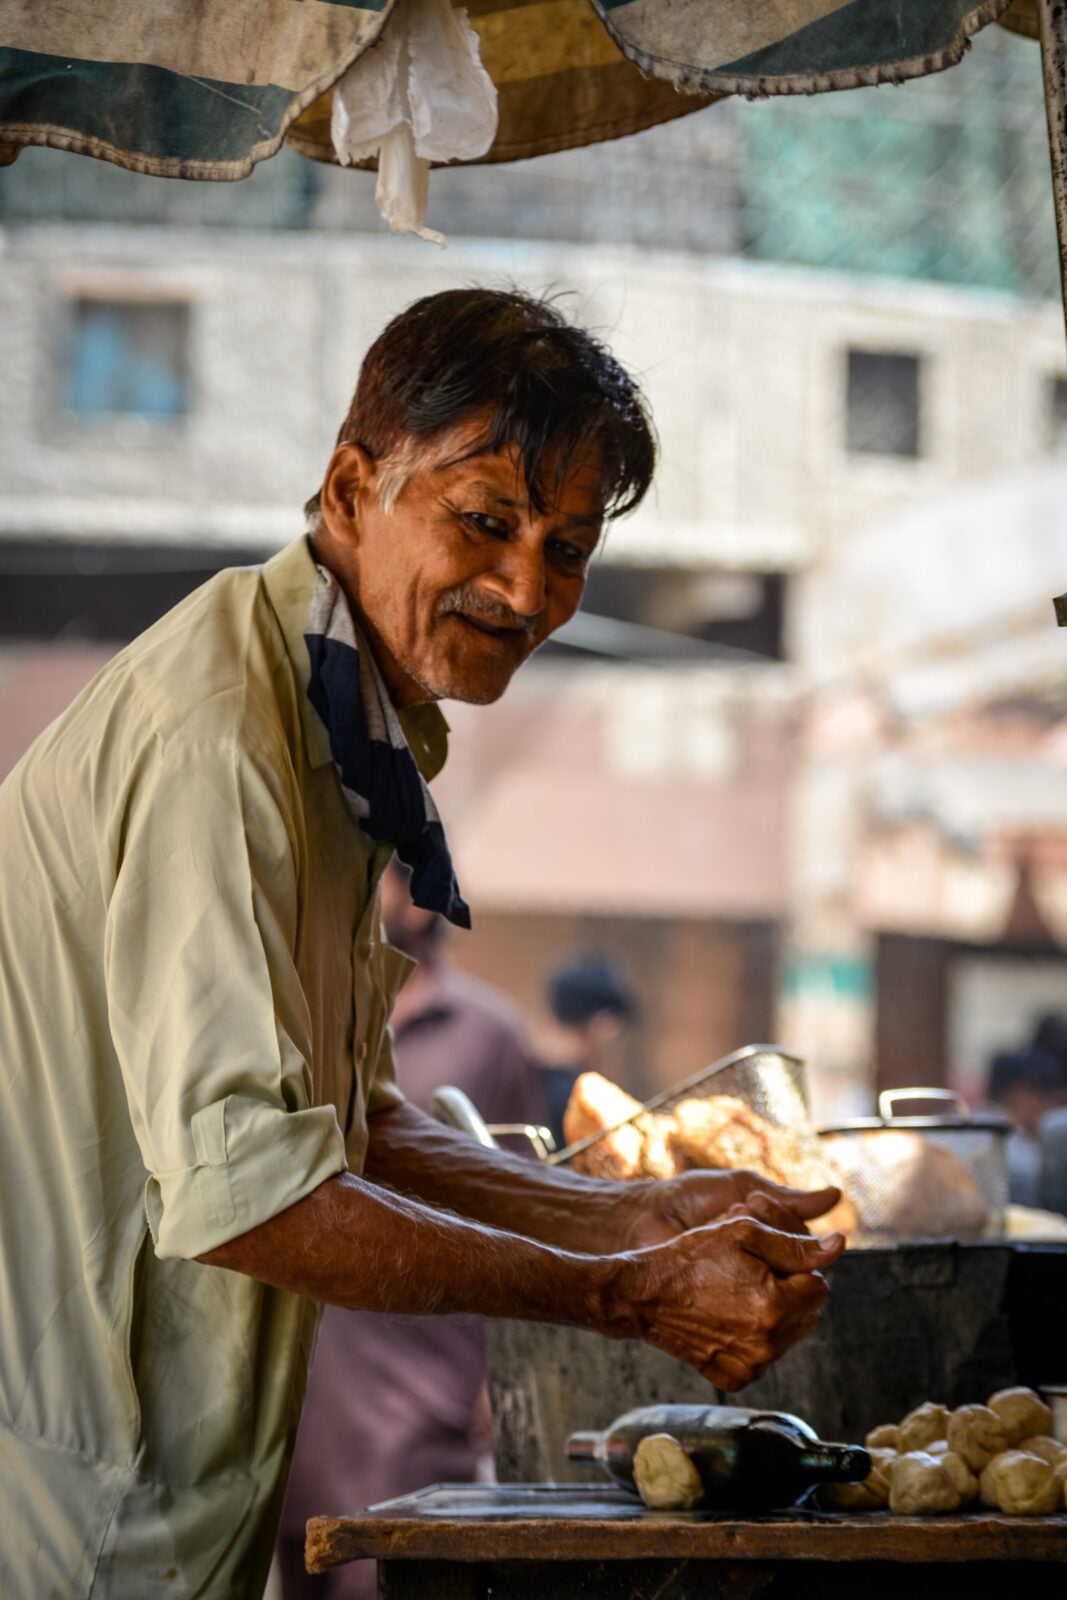 Photo of an Elderly Man Working